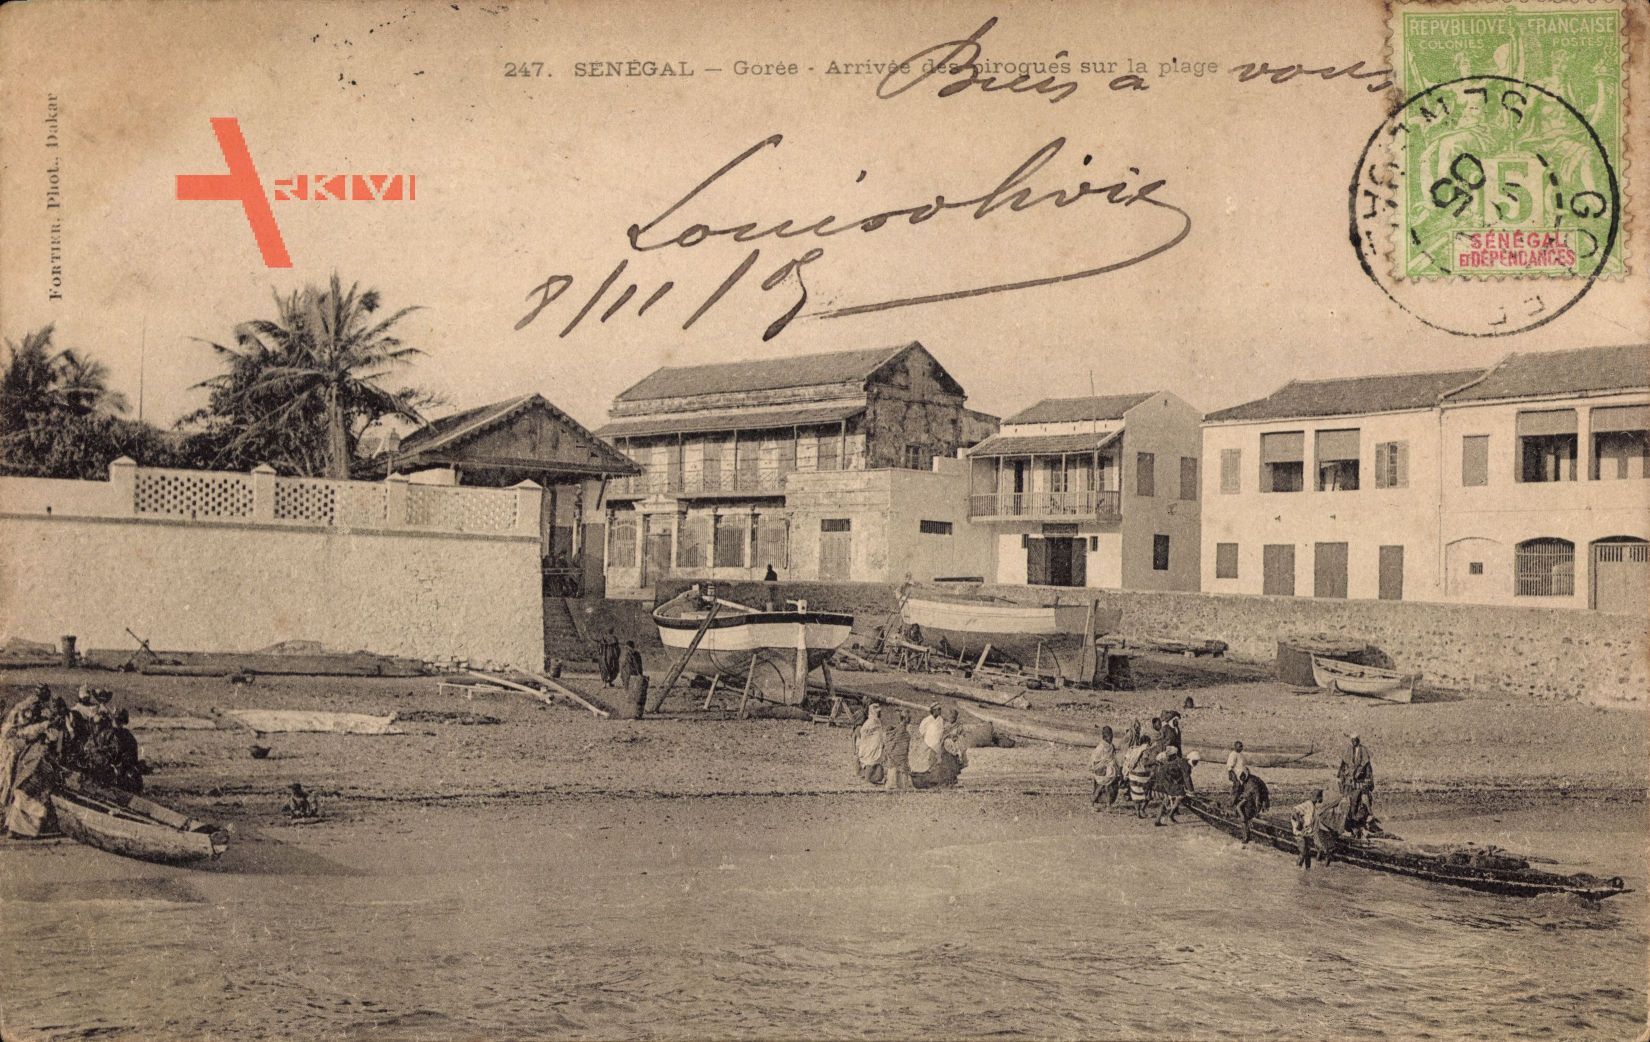 Gorée Senegal, Arrivée des pirogues sur la plage, Strand, Boote